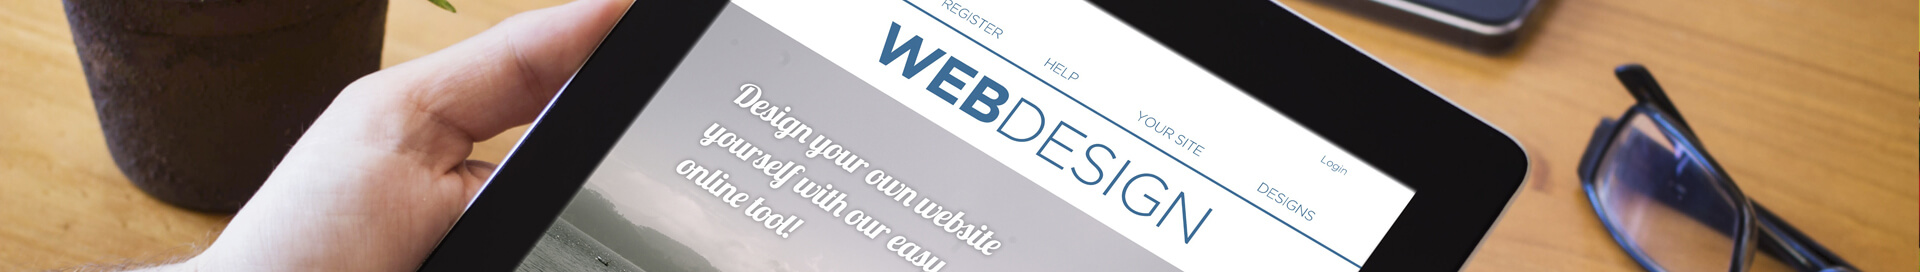 Hire Web Designers in India, Website Designing services in Delhi NCR, Web Designing services in Gurgaon